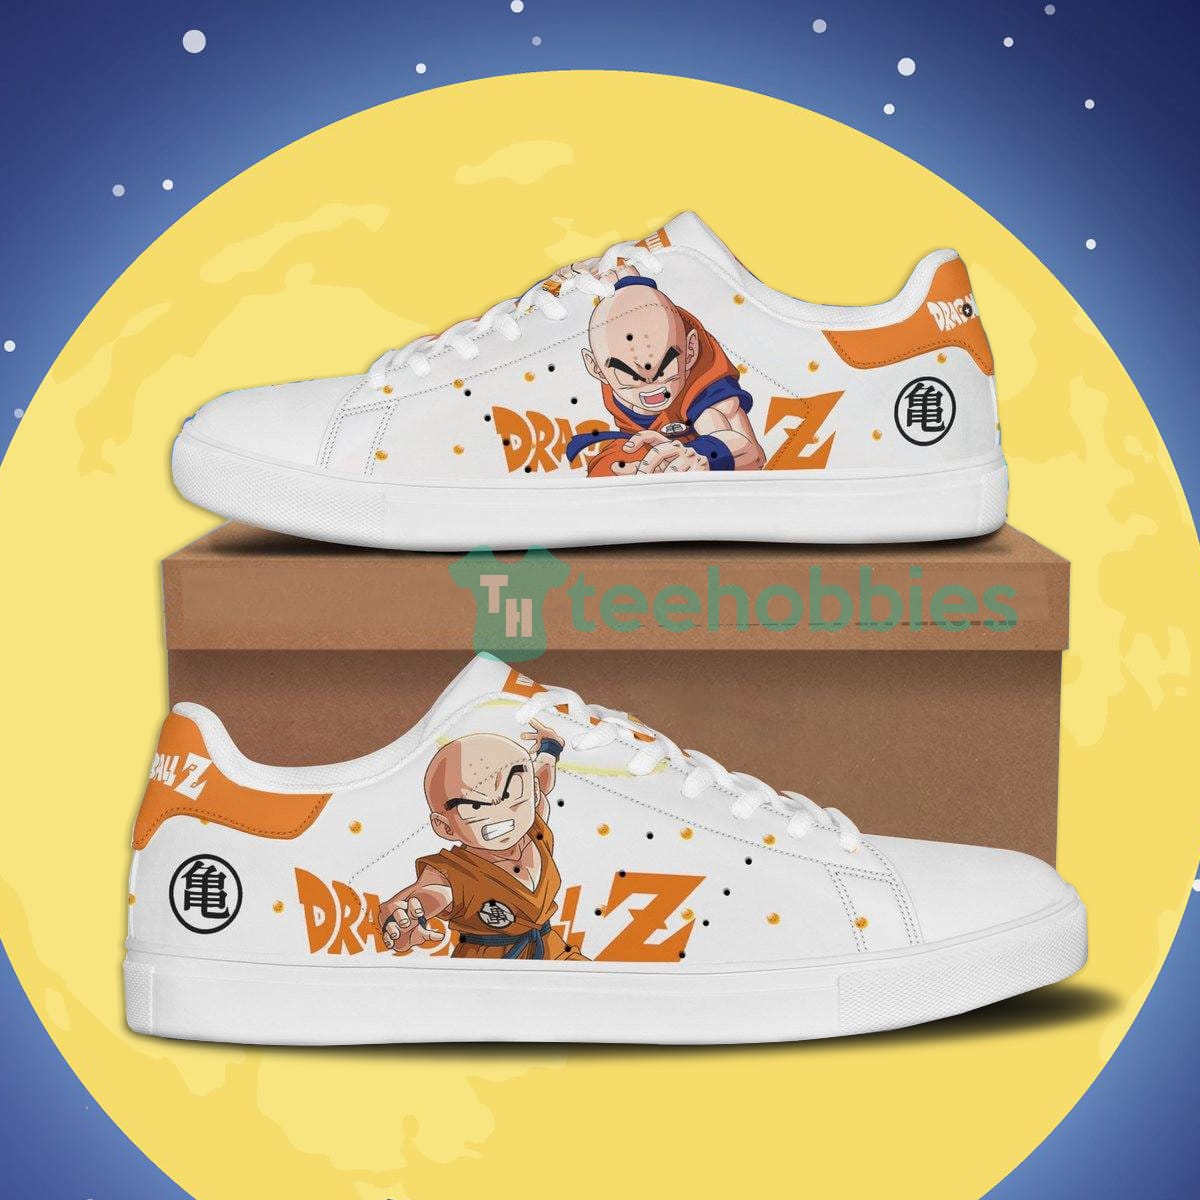 Dragon Ball Krillin Custom Anime Skate Shoes For Anime Fans